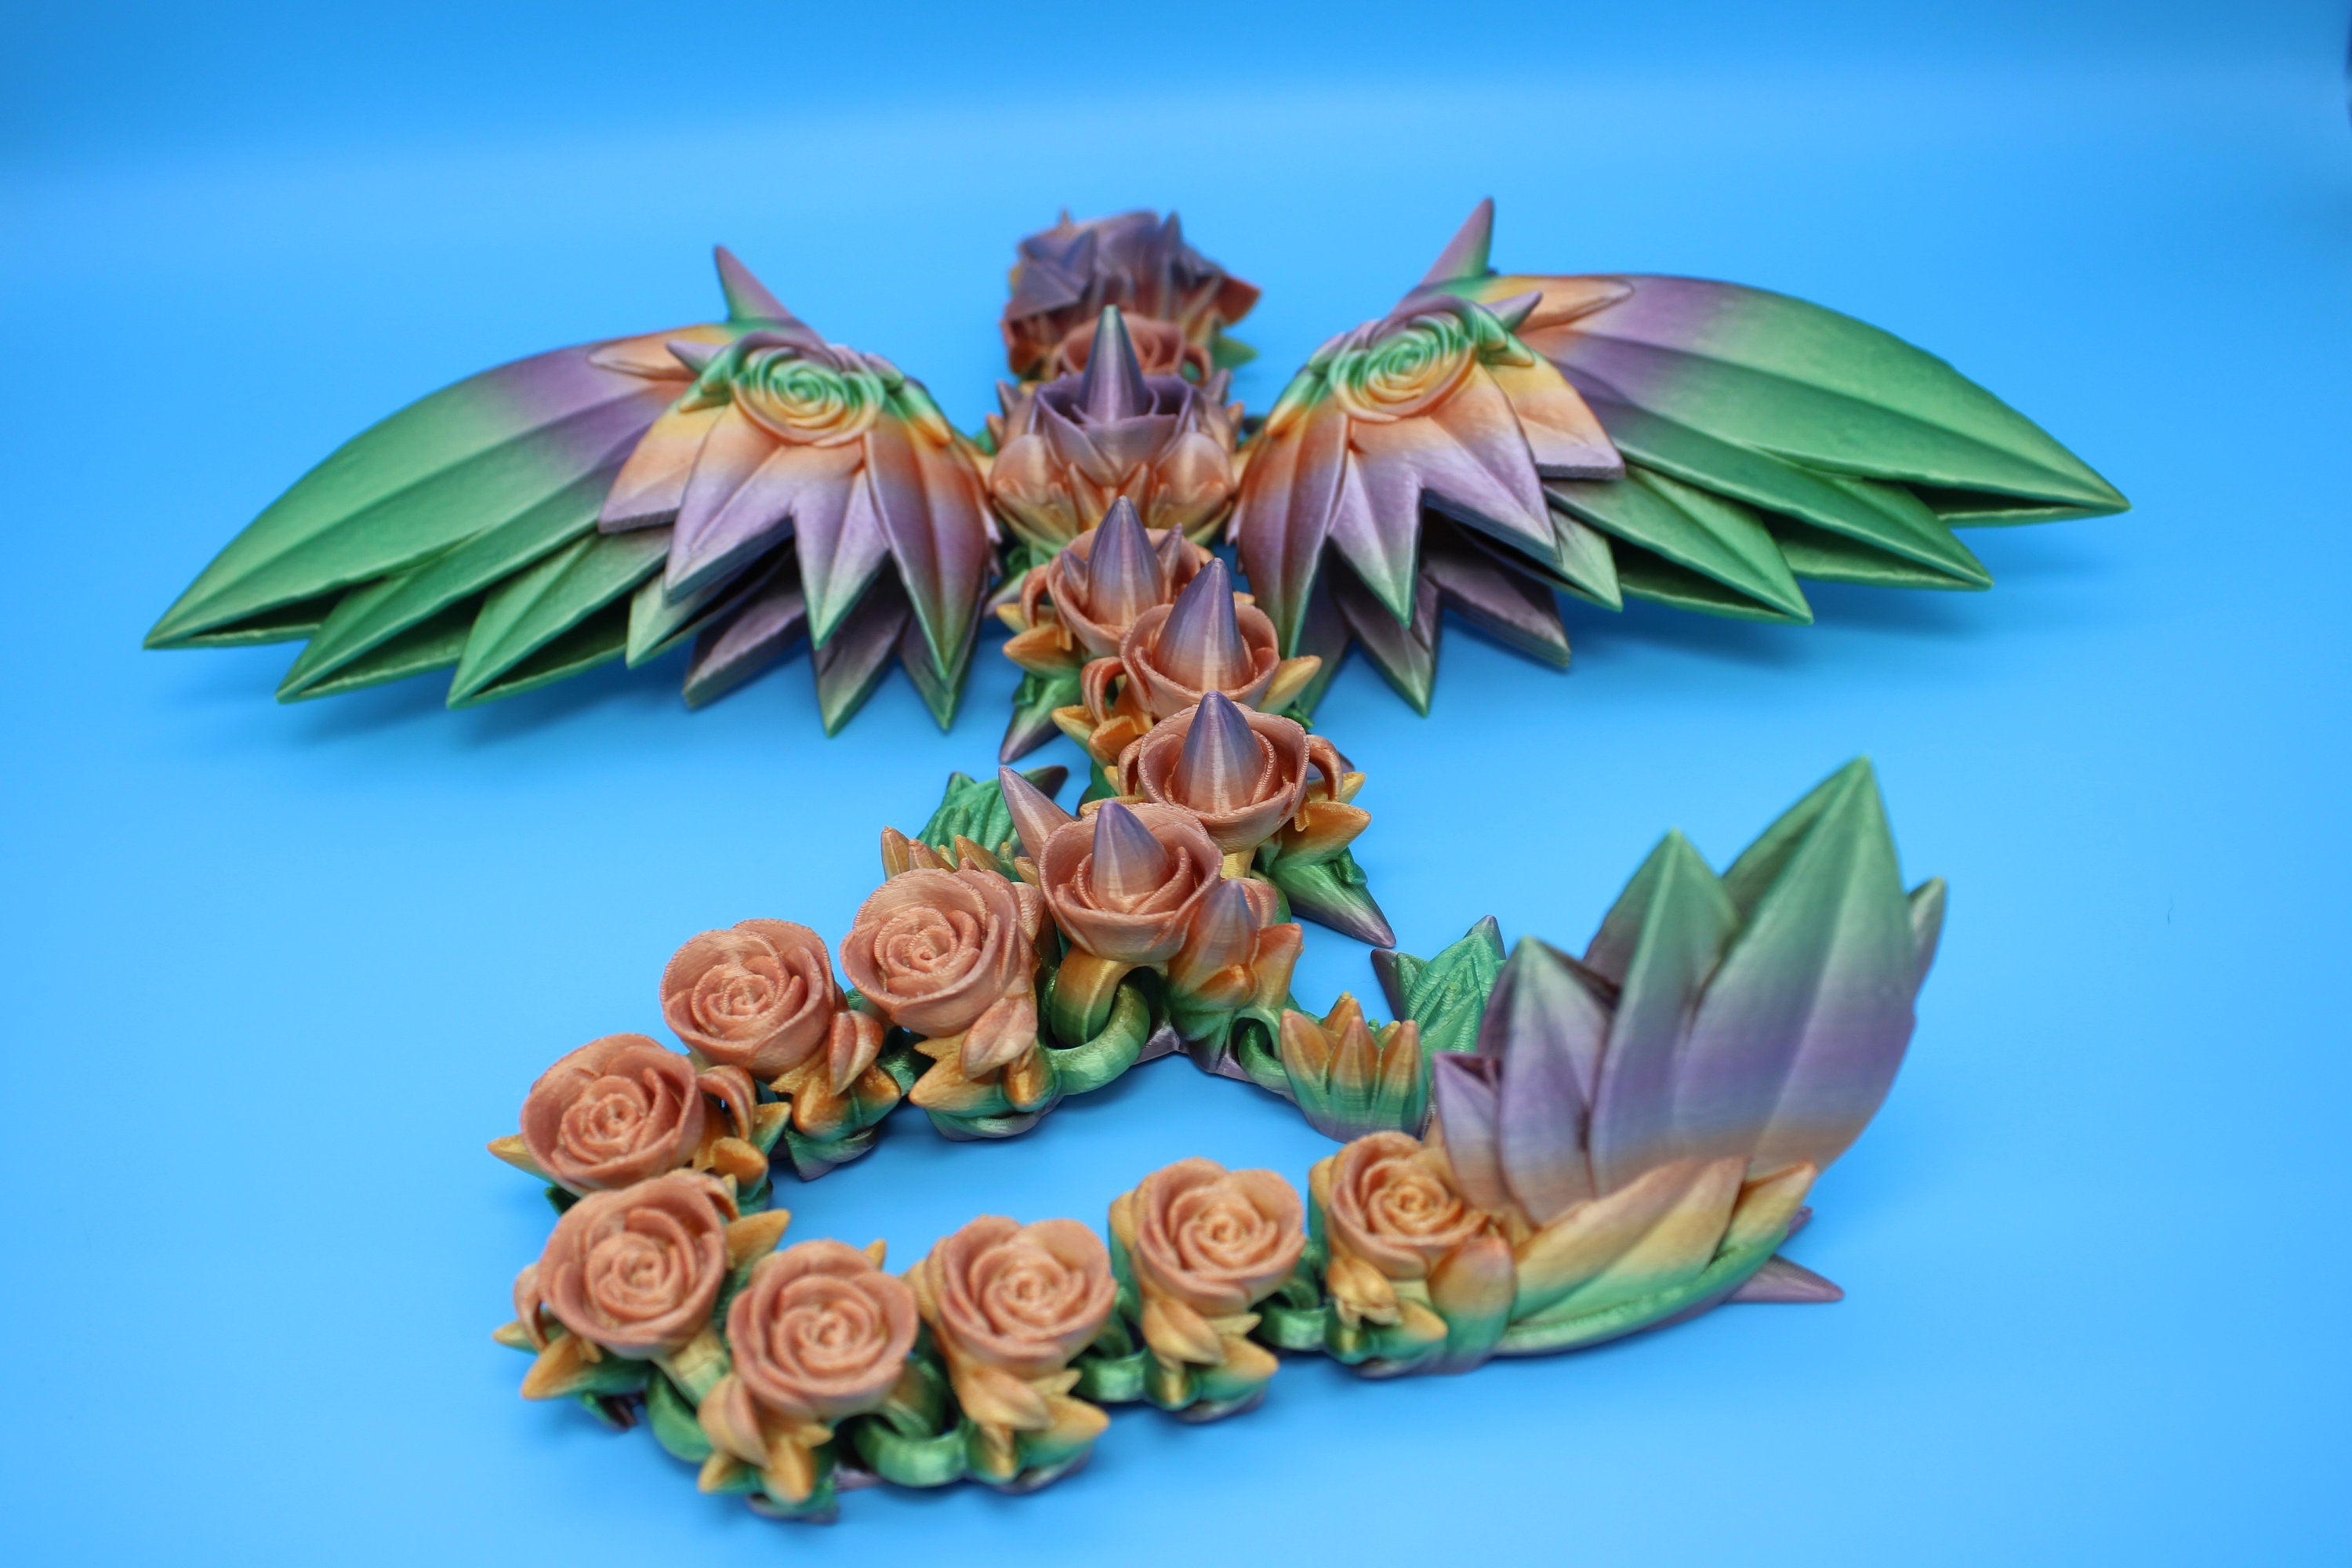 The Dragon's Wings printed by Lulu Jr 